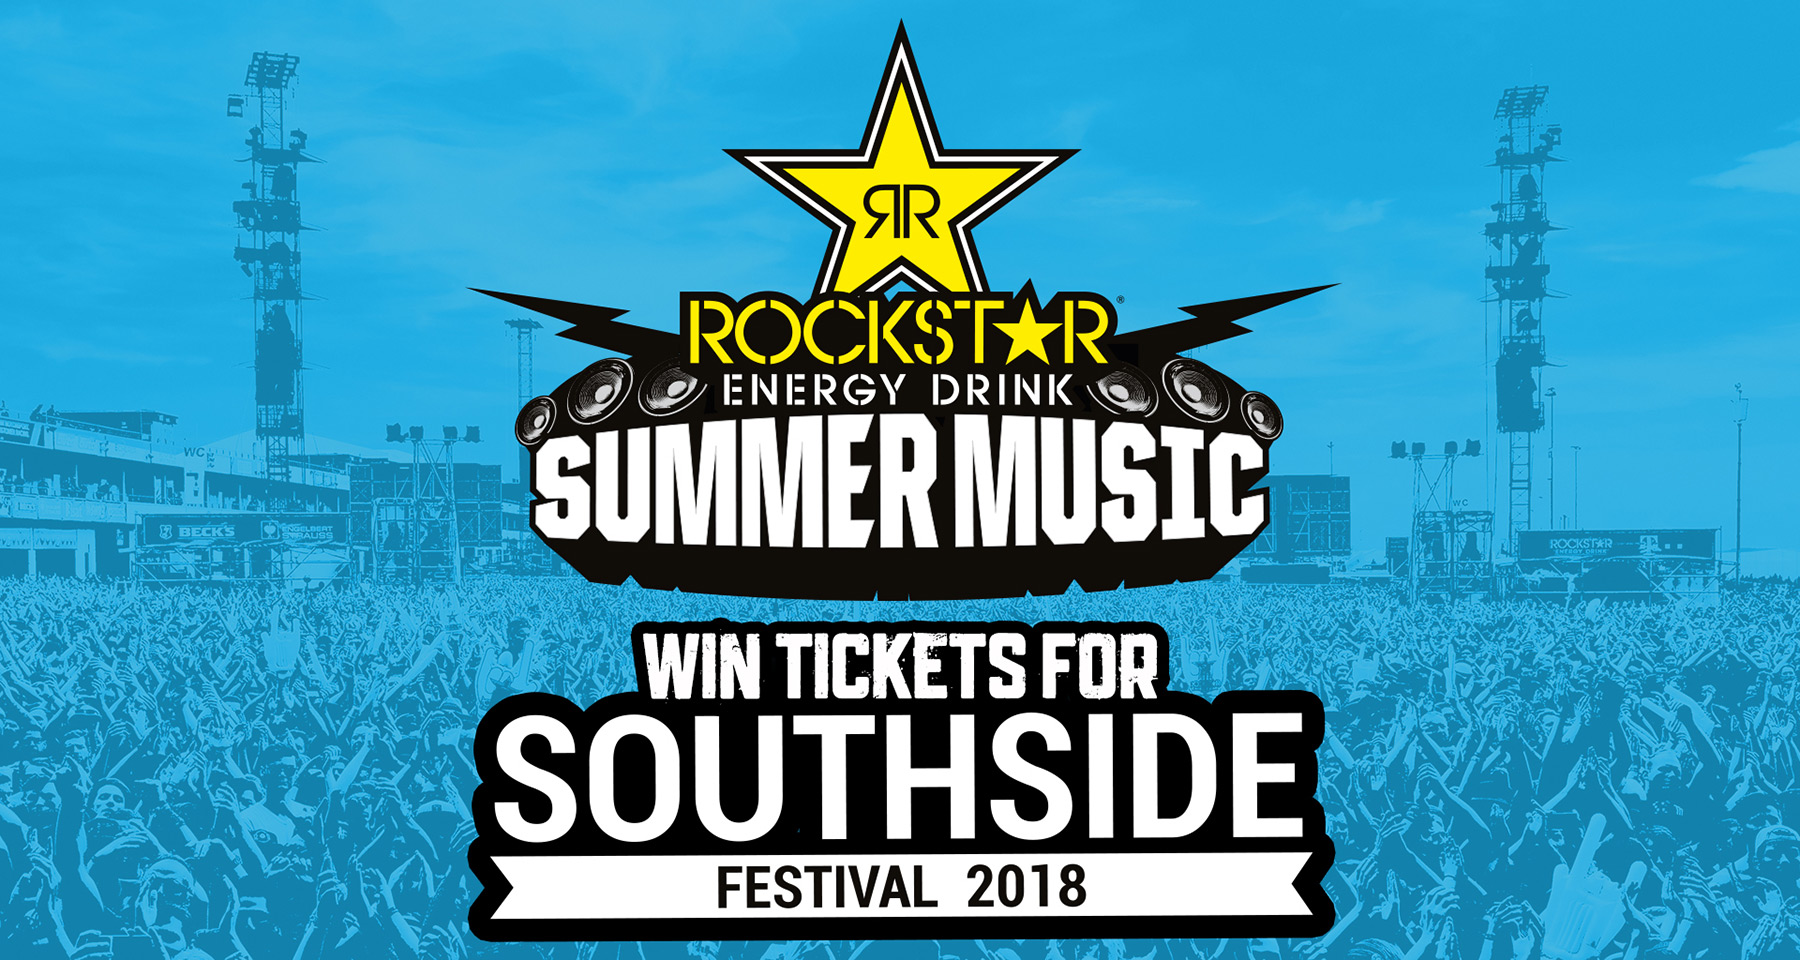 Ich verlose 2x2 Tickets für das Southside Festival 2018 rockstar-southside-festival-tickets 